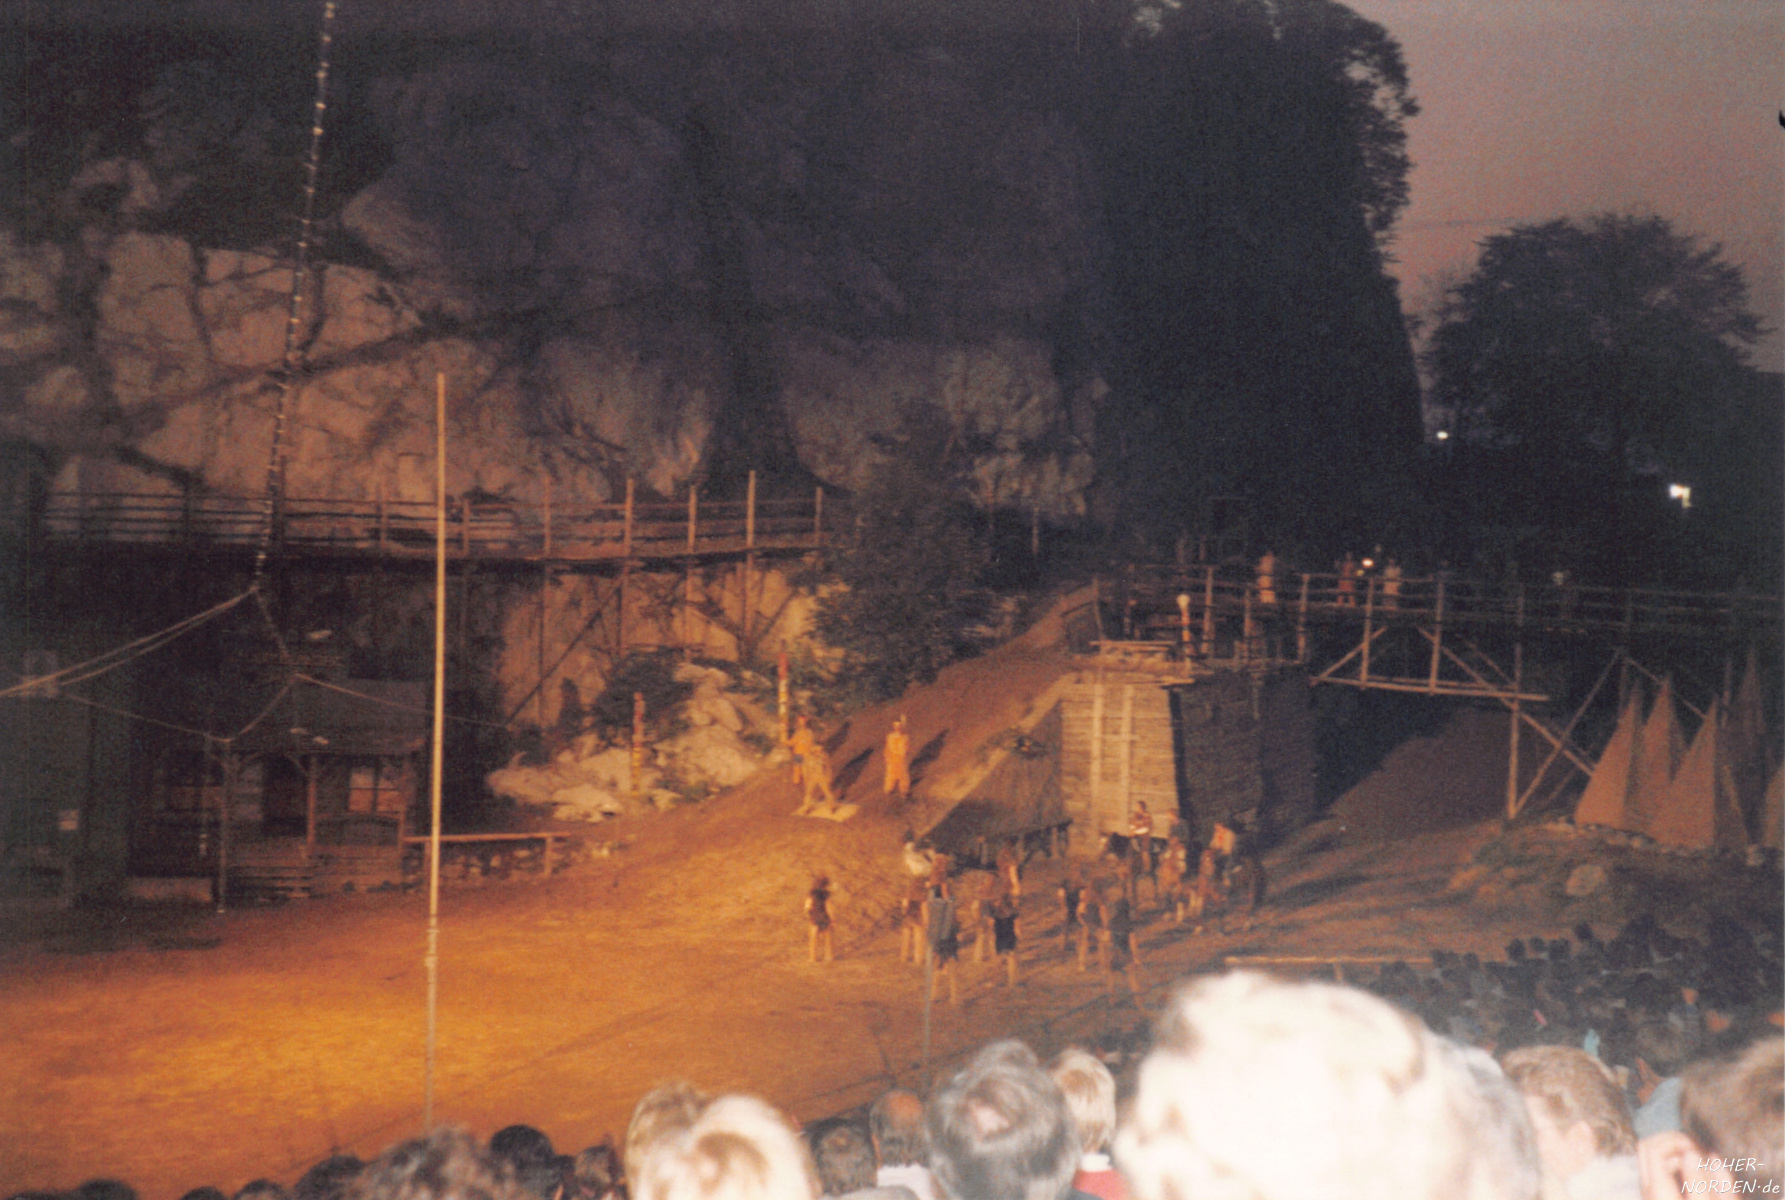 Karl-May Festspiele 1987 in Bad Segeberg